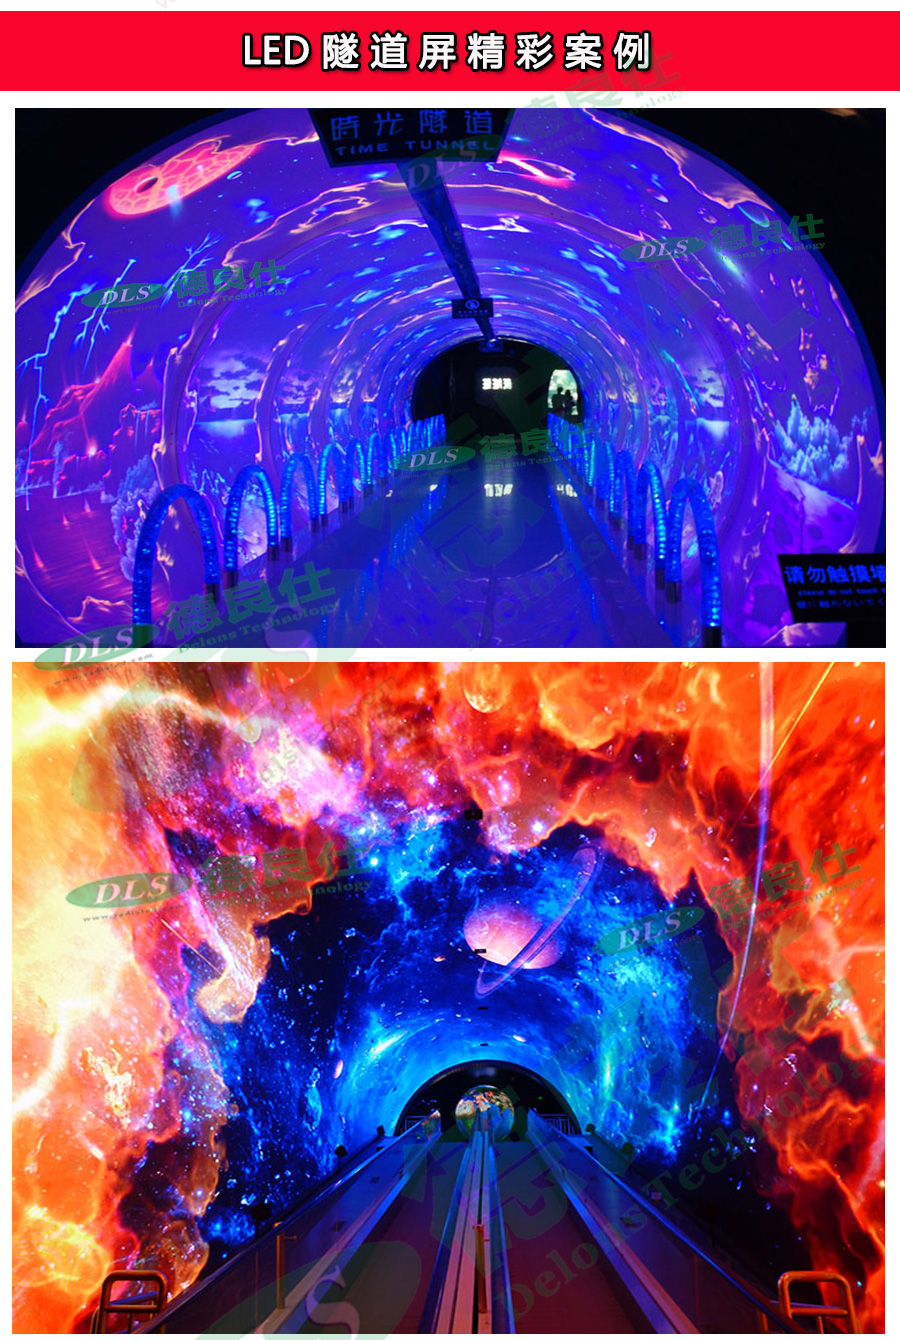 led时光隧道屏互动时光倒流显示屏沉浸式体验时光隧道